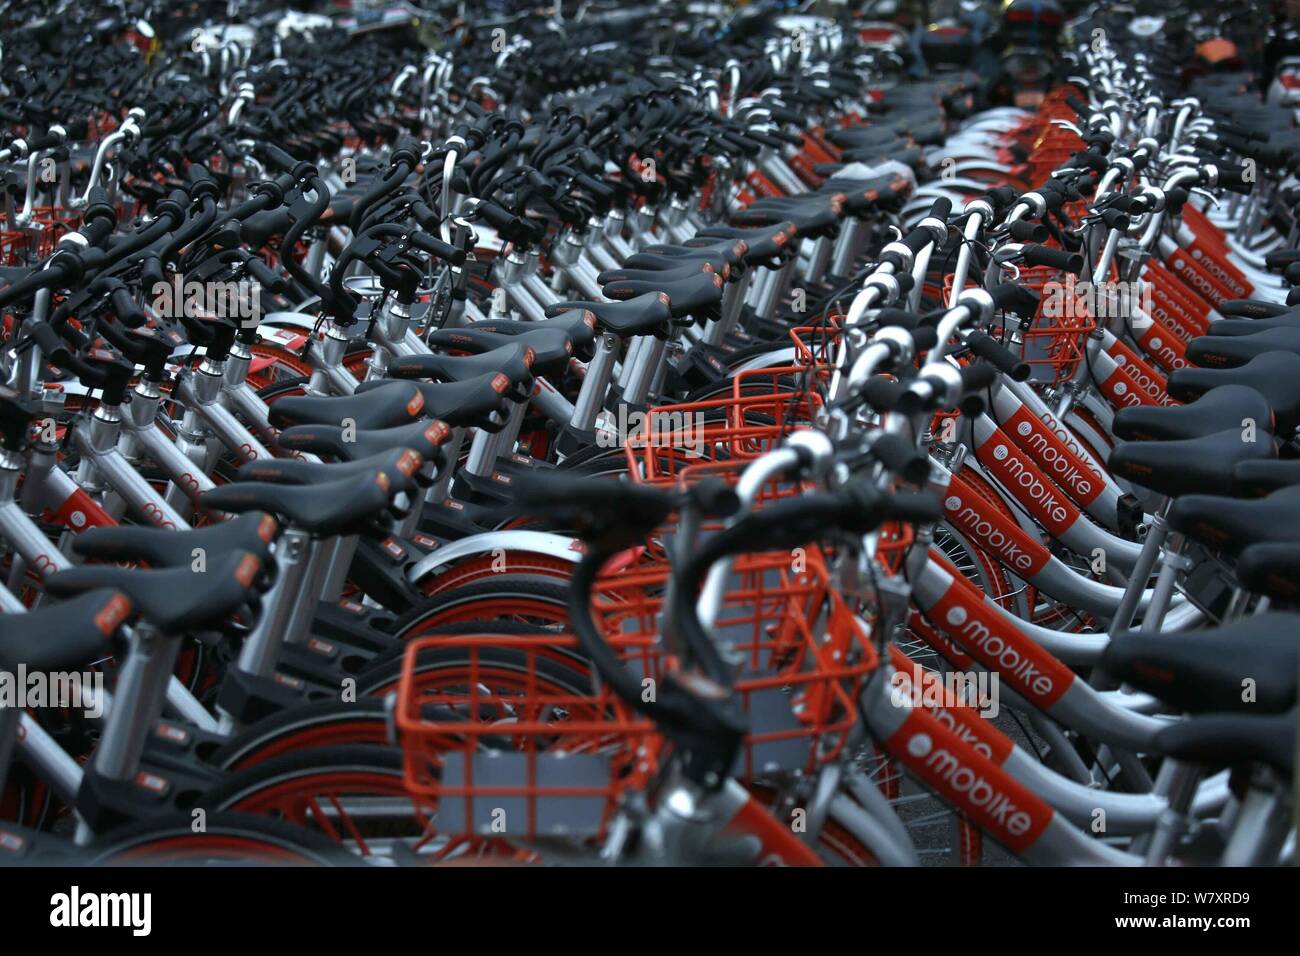 Fahrräder der Chinesischen bike-sharing Diensten Mobike sind auf einem Parkplatz in Shanghai, China, 28. Februar 2017 gesäumt. Mehr als 4.000 'Inhaftierung' bicy Stockfoto